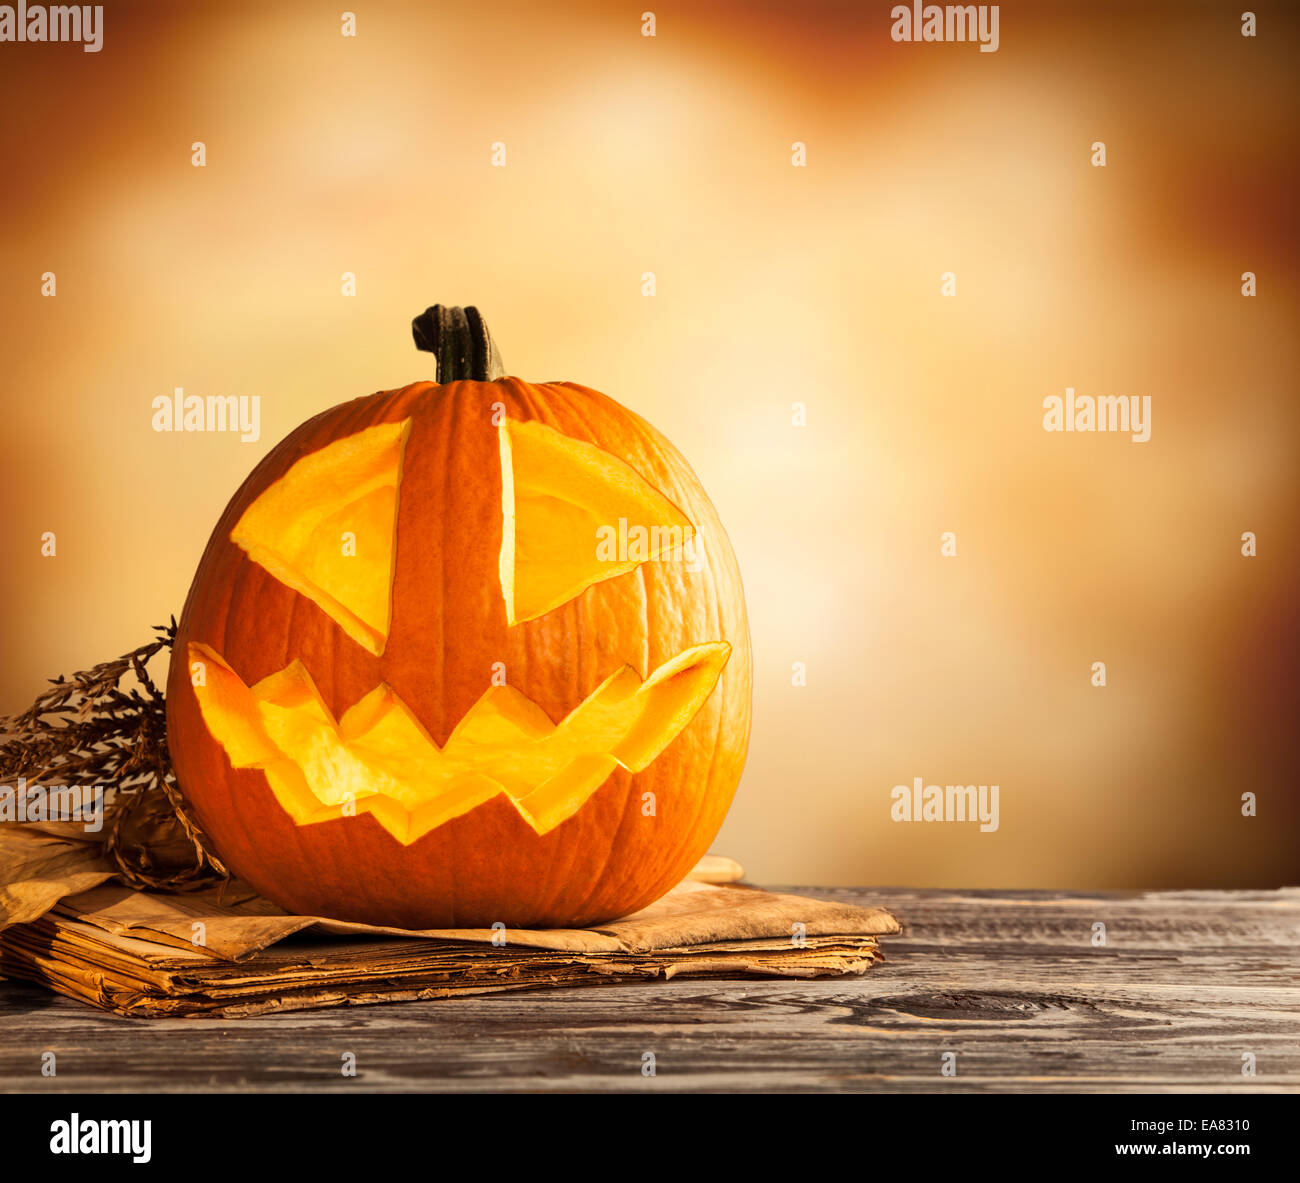 Mal halloween calabaza de madera con espacio libre para texto Foto de stock